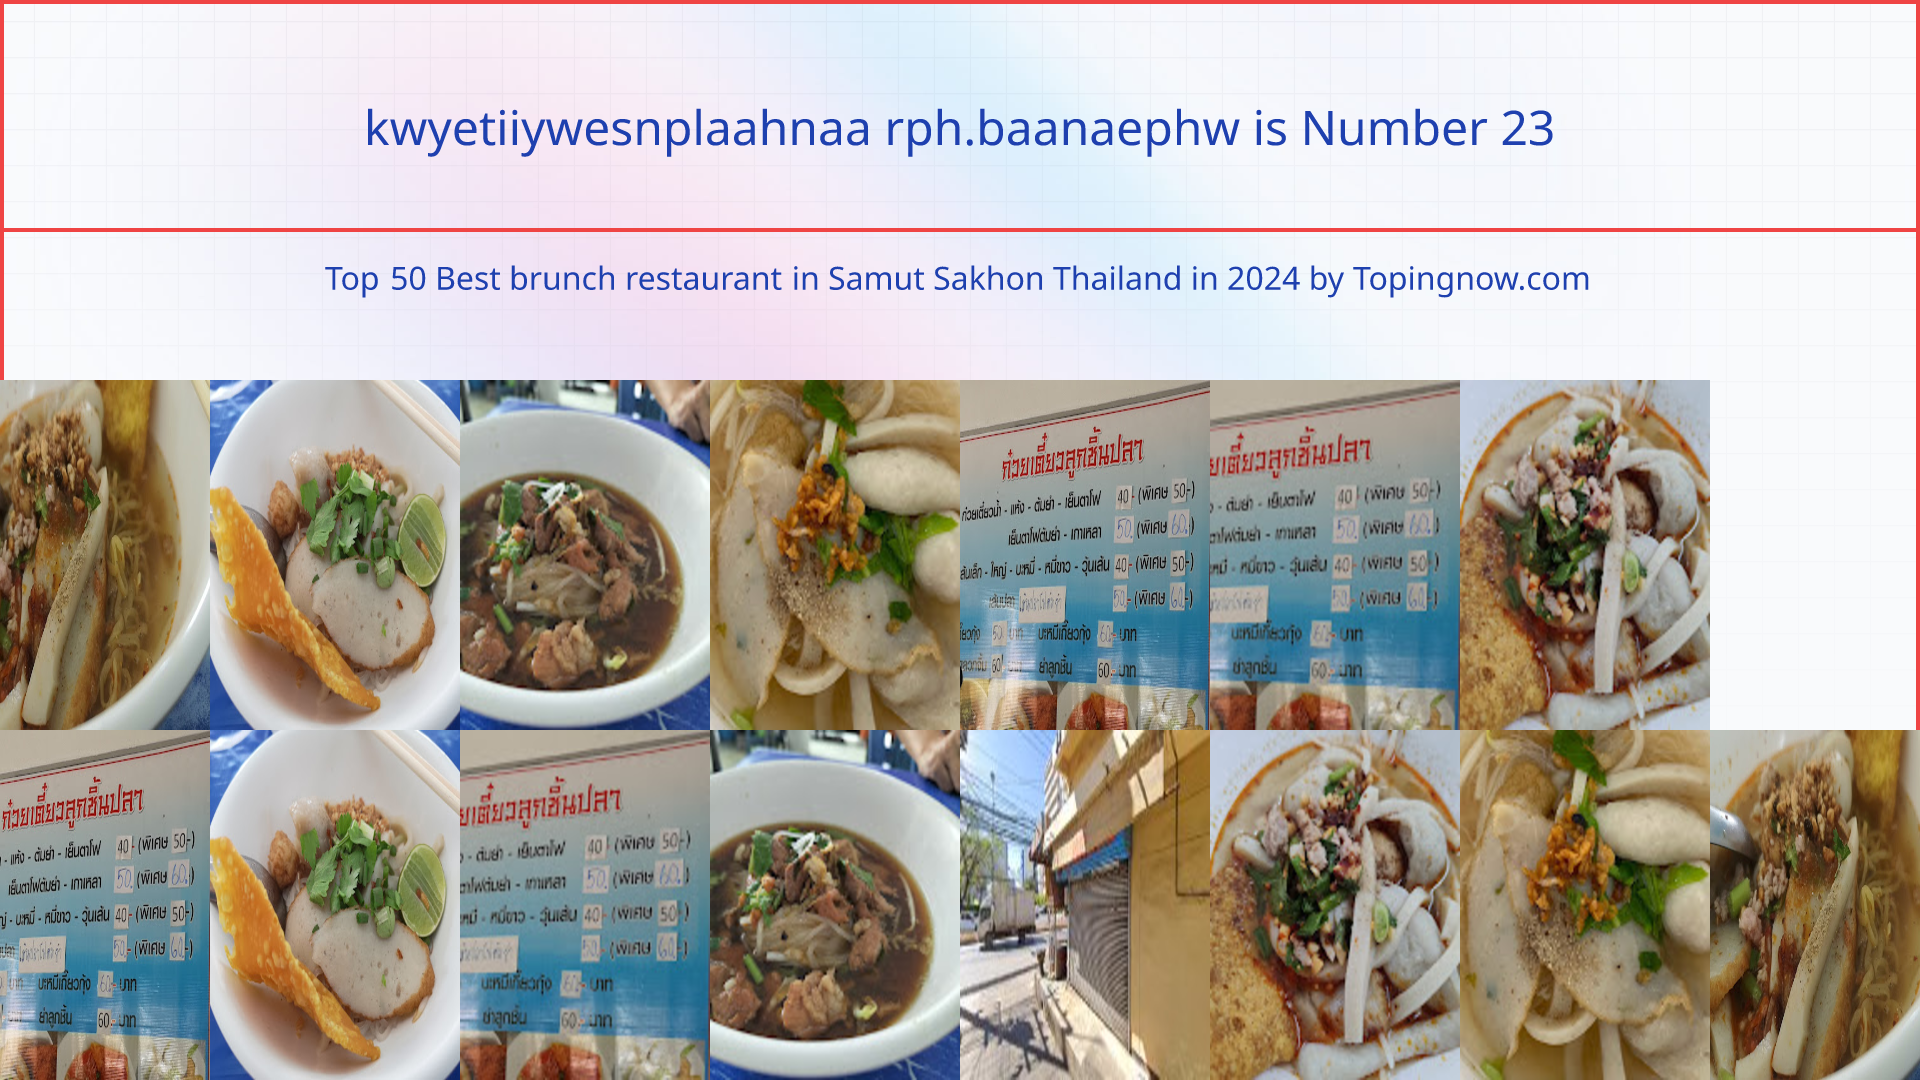 kwyetiiywesnplaahnaa rph.baanaephw: Top 50 Best brunch restaurant in Samut Sakhon Thailand in 2024